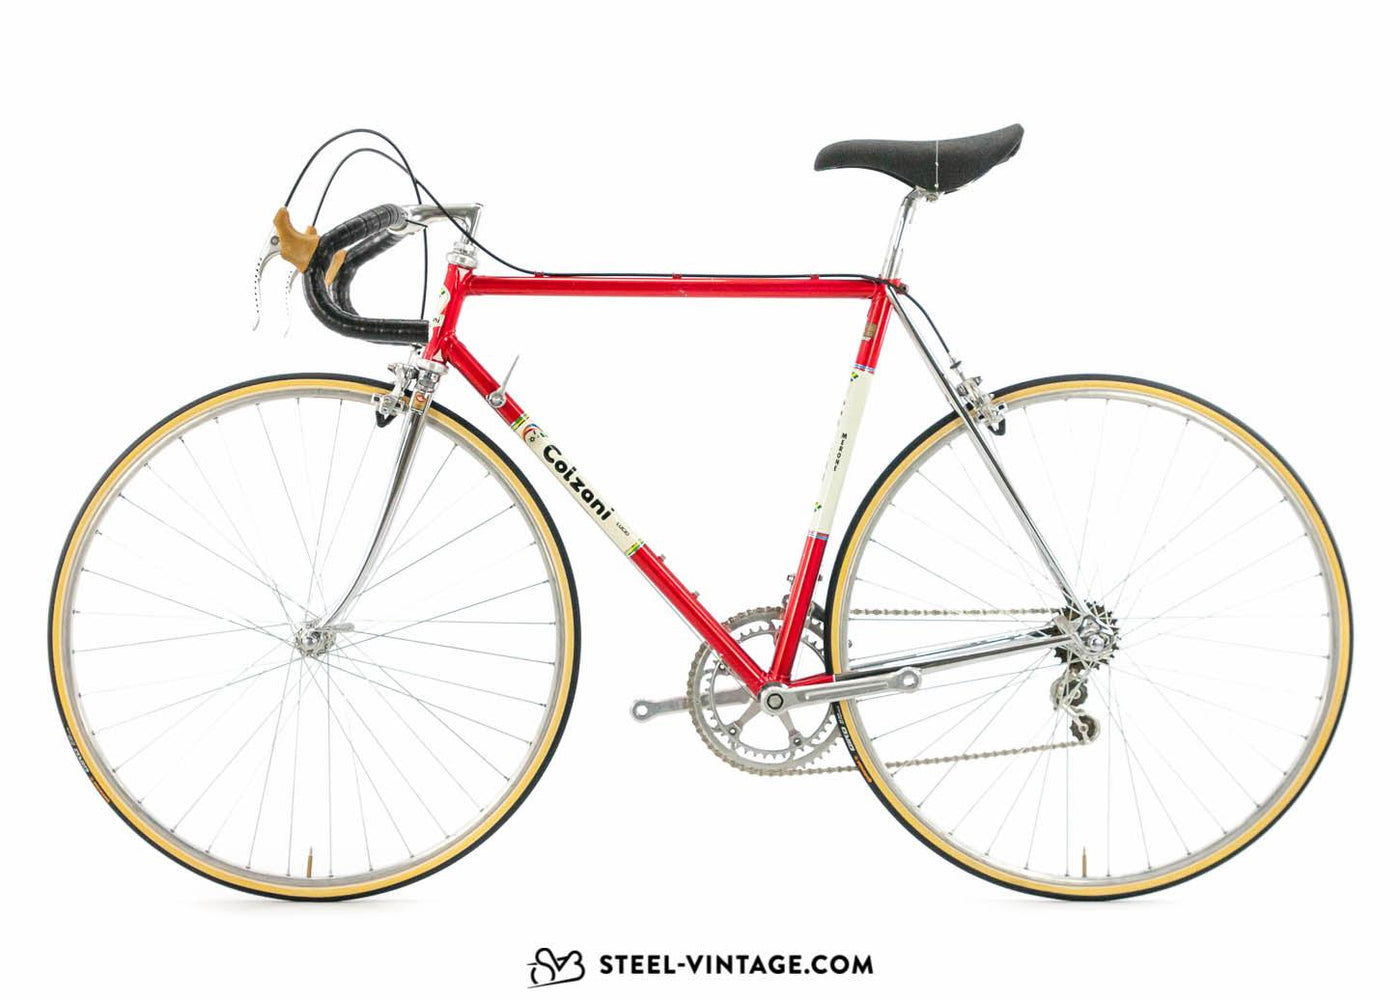 Colzani Classic Road Bike 1980s - Steel Vintage Bikes